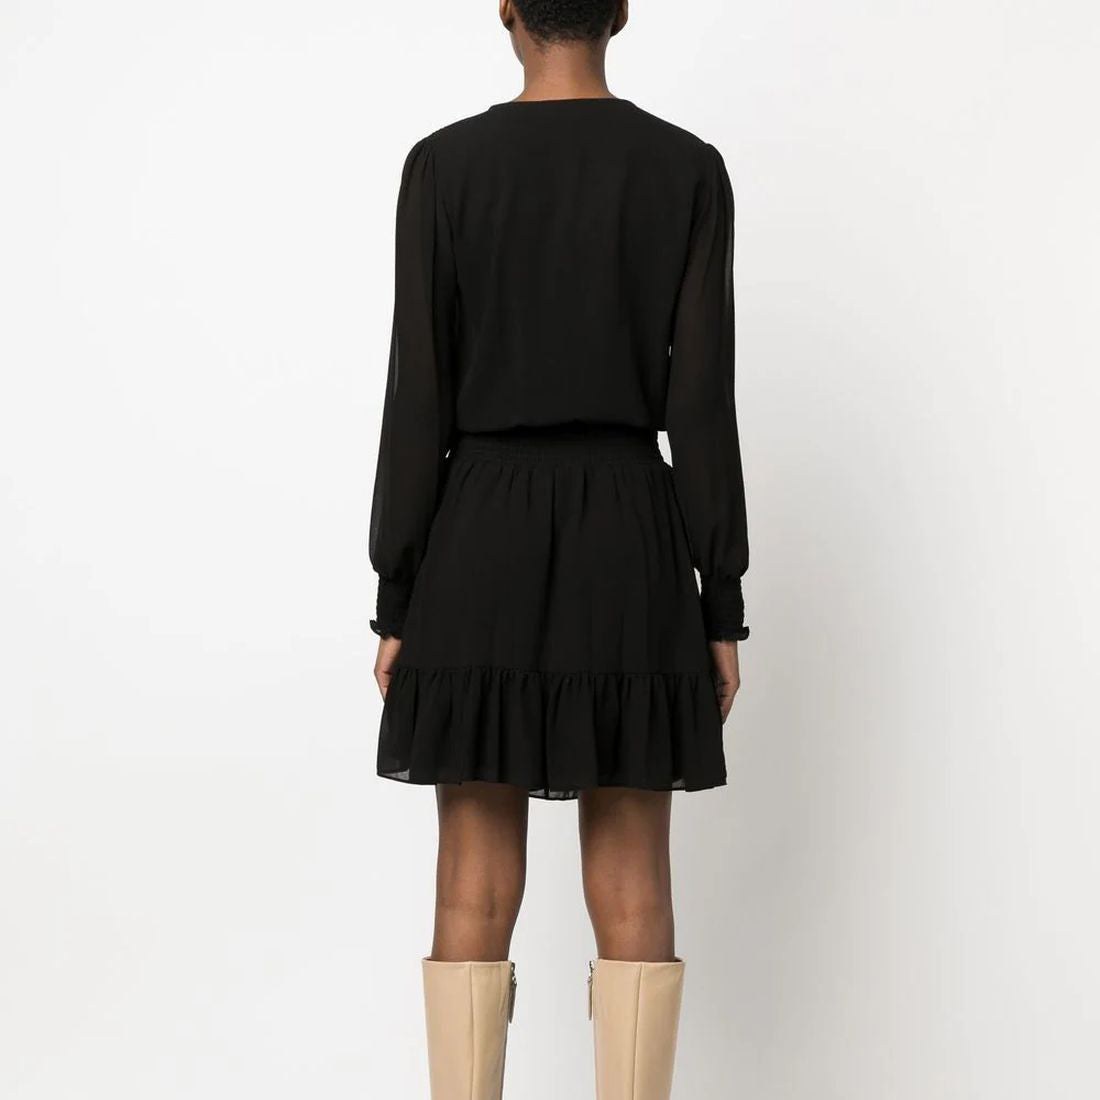 MICHAEL KORS moteriška juoda suknelė Solid ruffle dress